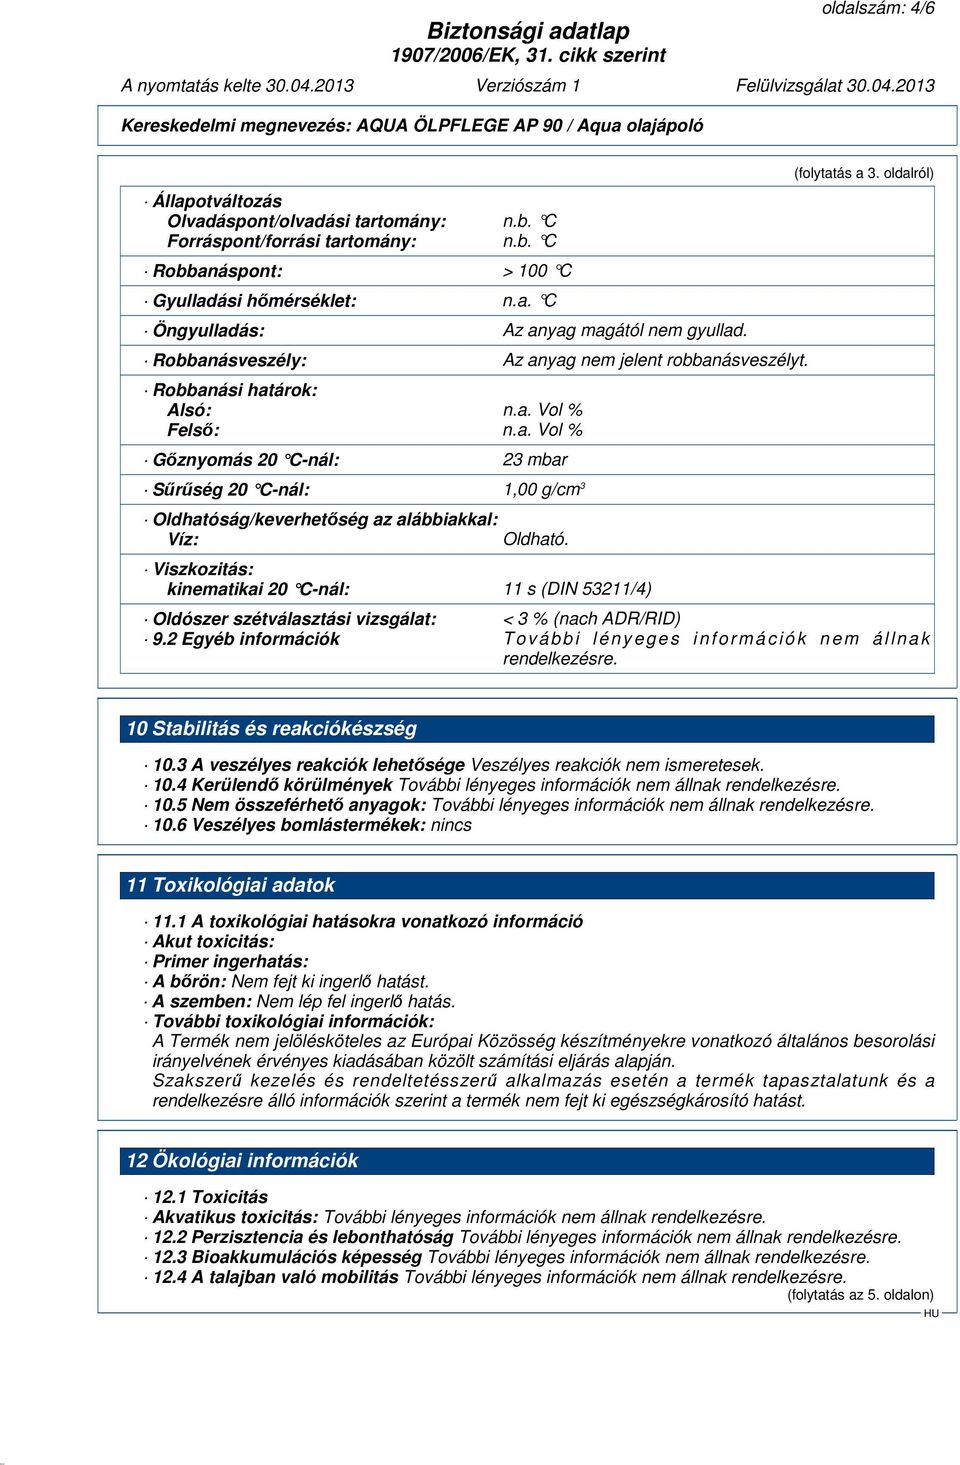 Viszkozitás: kinematikai 20 C-nál: 11 s (DIN 53211/4) (folytatás a 3. oldalról) Oldószer szétválasztási vizsgálat: < 3 % (nach ADR/RID) 9.